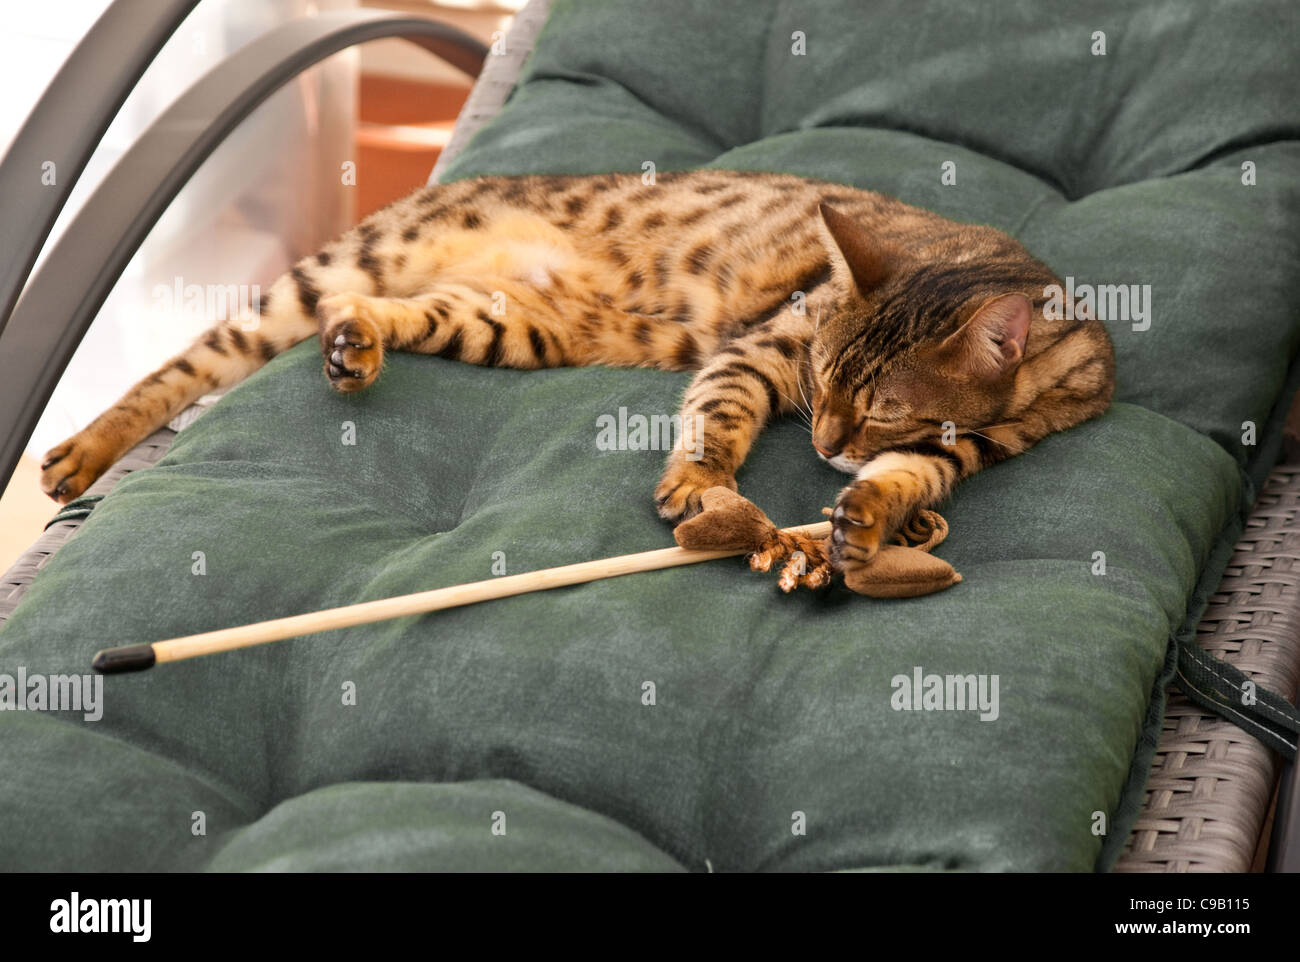 Un Bengal chat couché épuisé après avoir joué. Banque D'Images